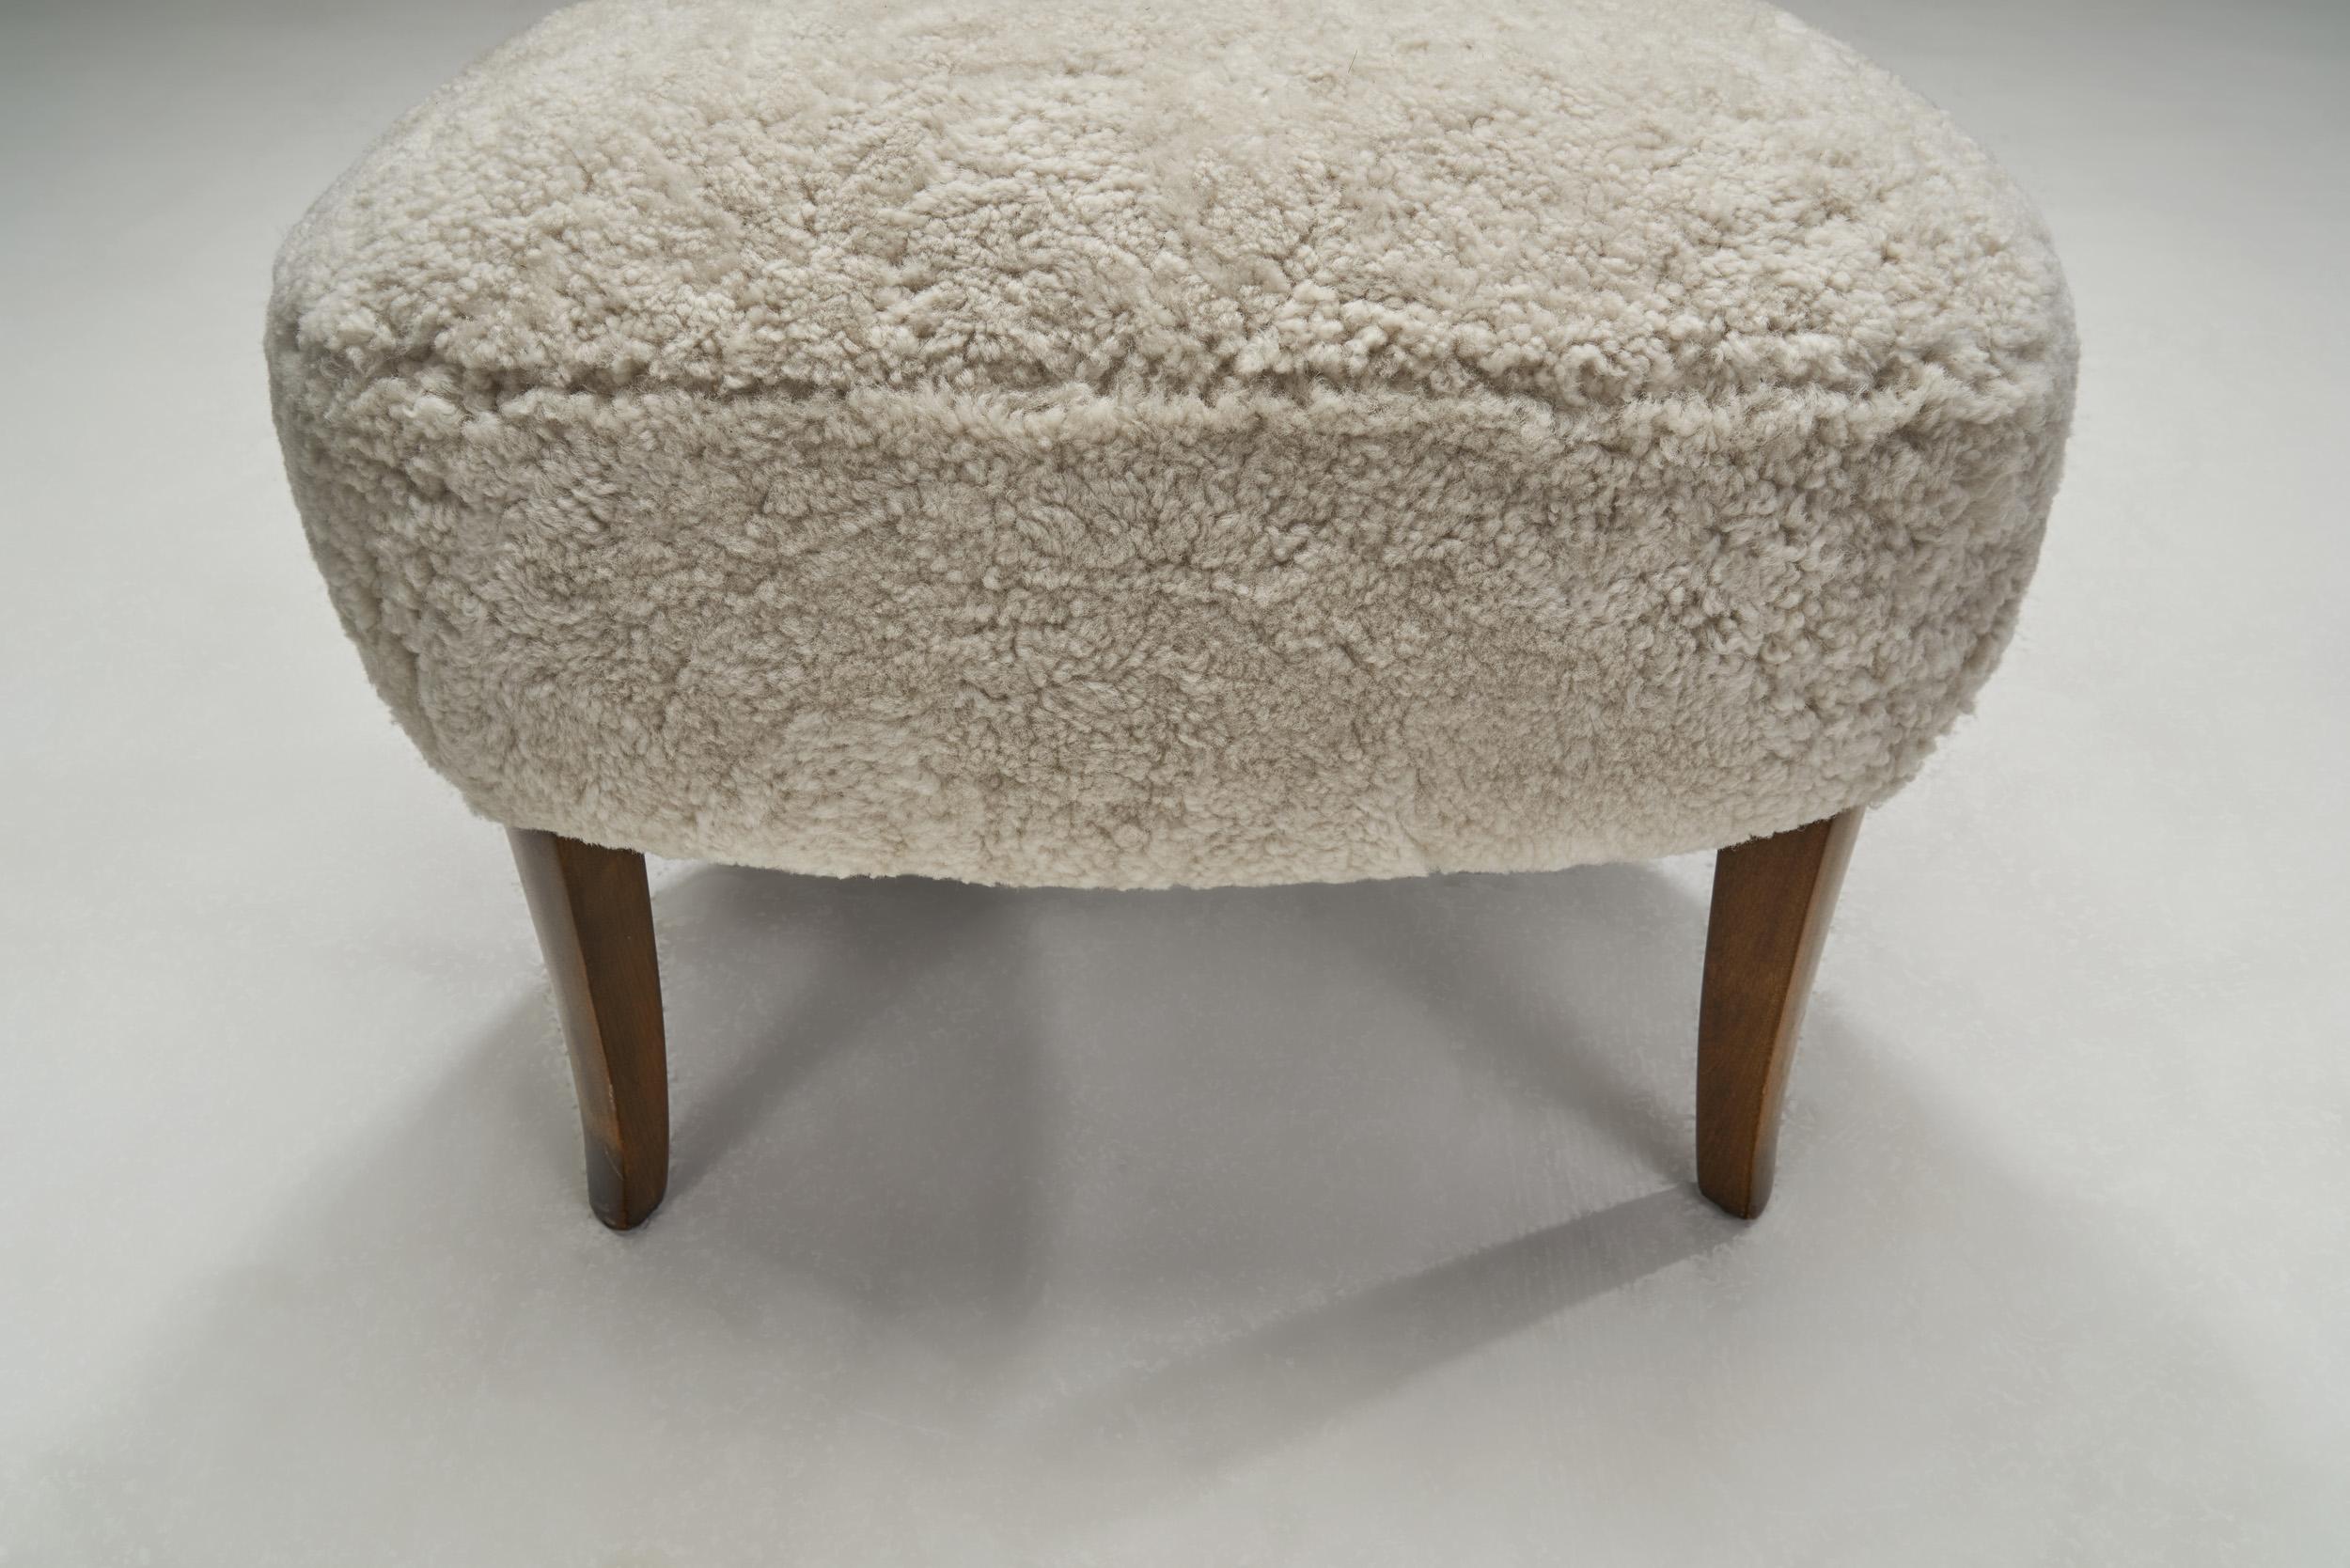 Sheepskin Mid-Century “Gamla Berlin” Easy Chair by Carl Malmsten, Sweden 1940s For Sale